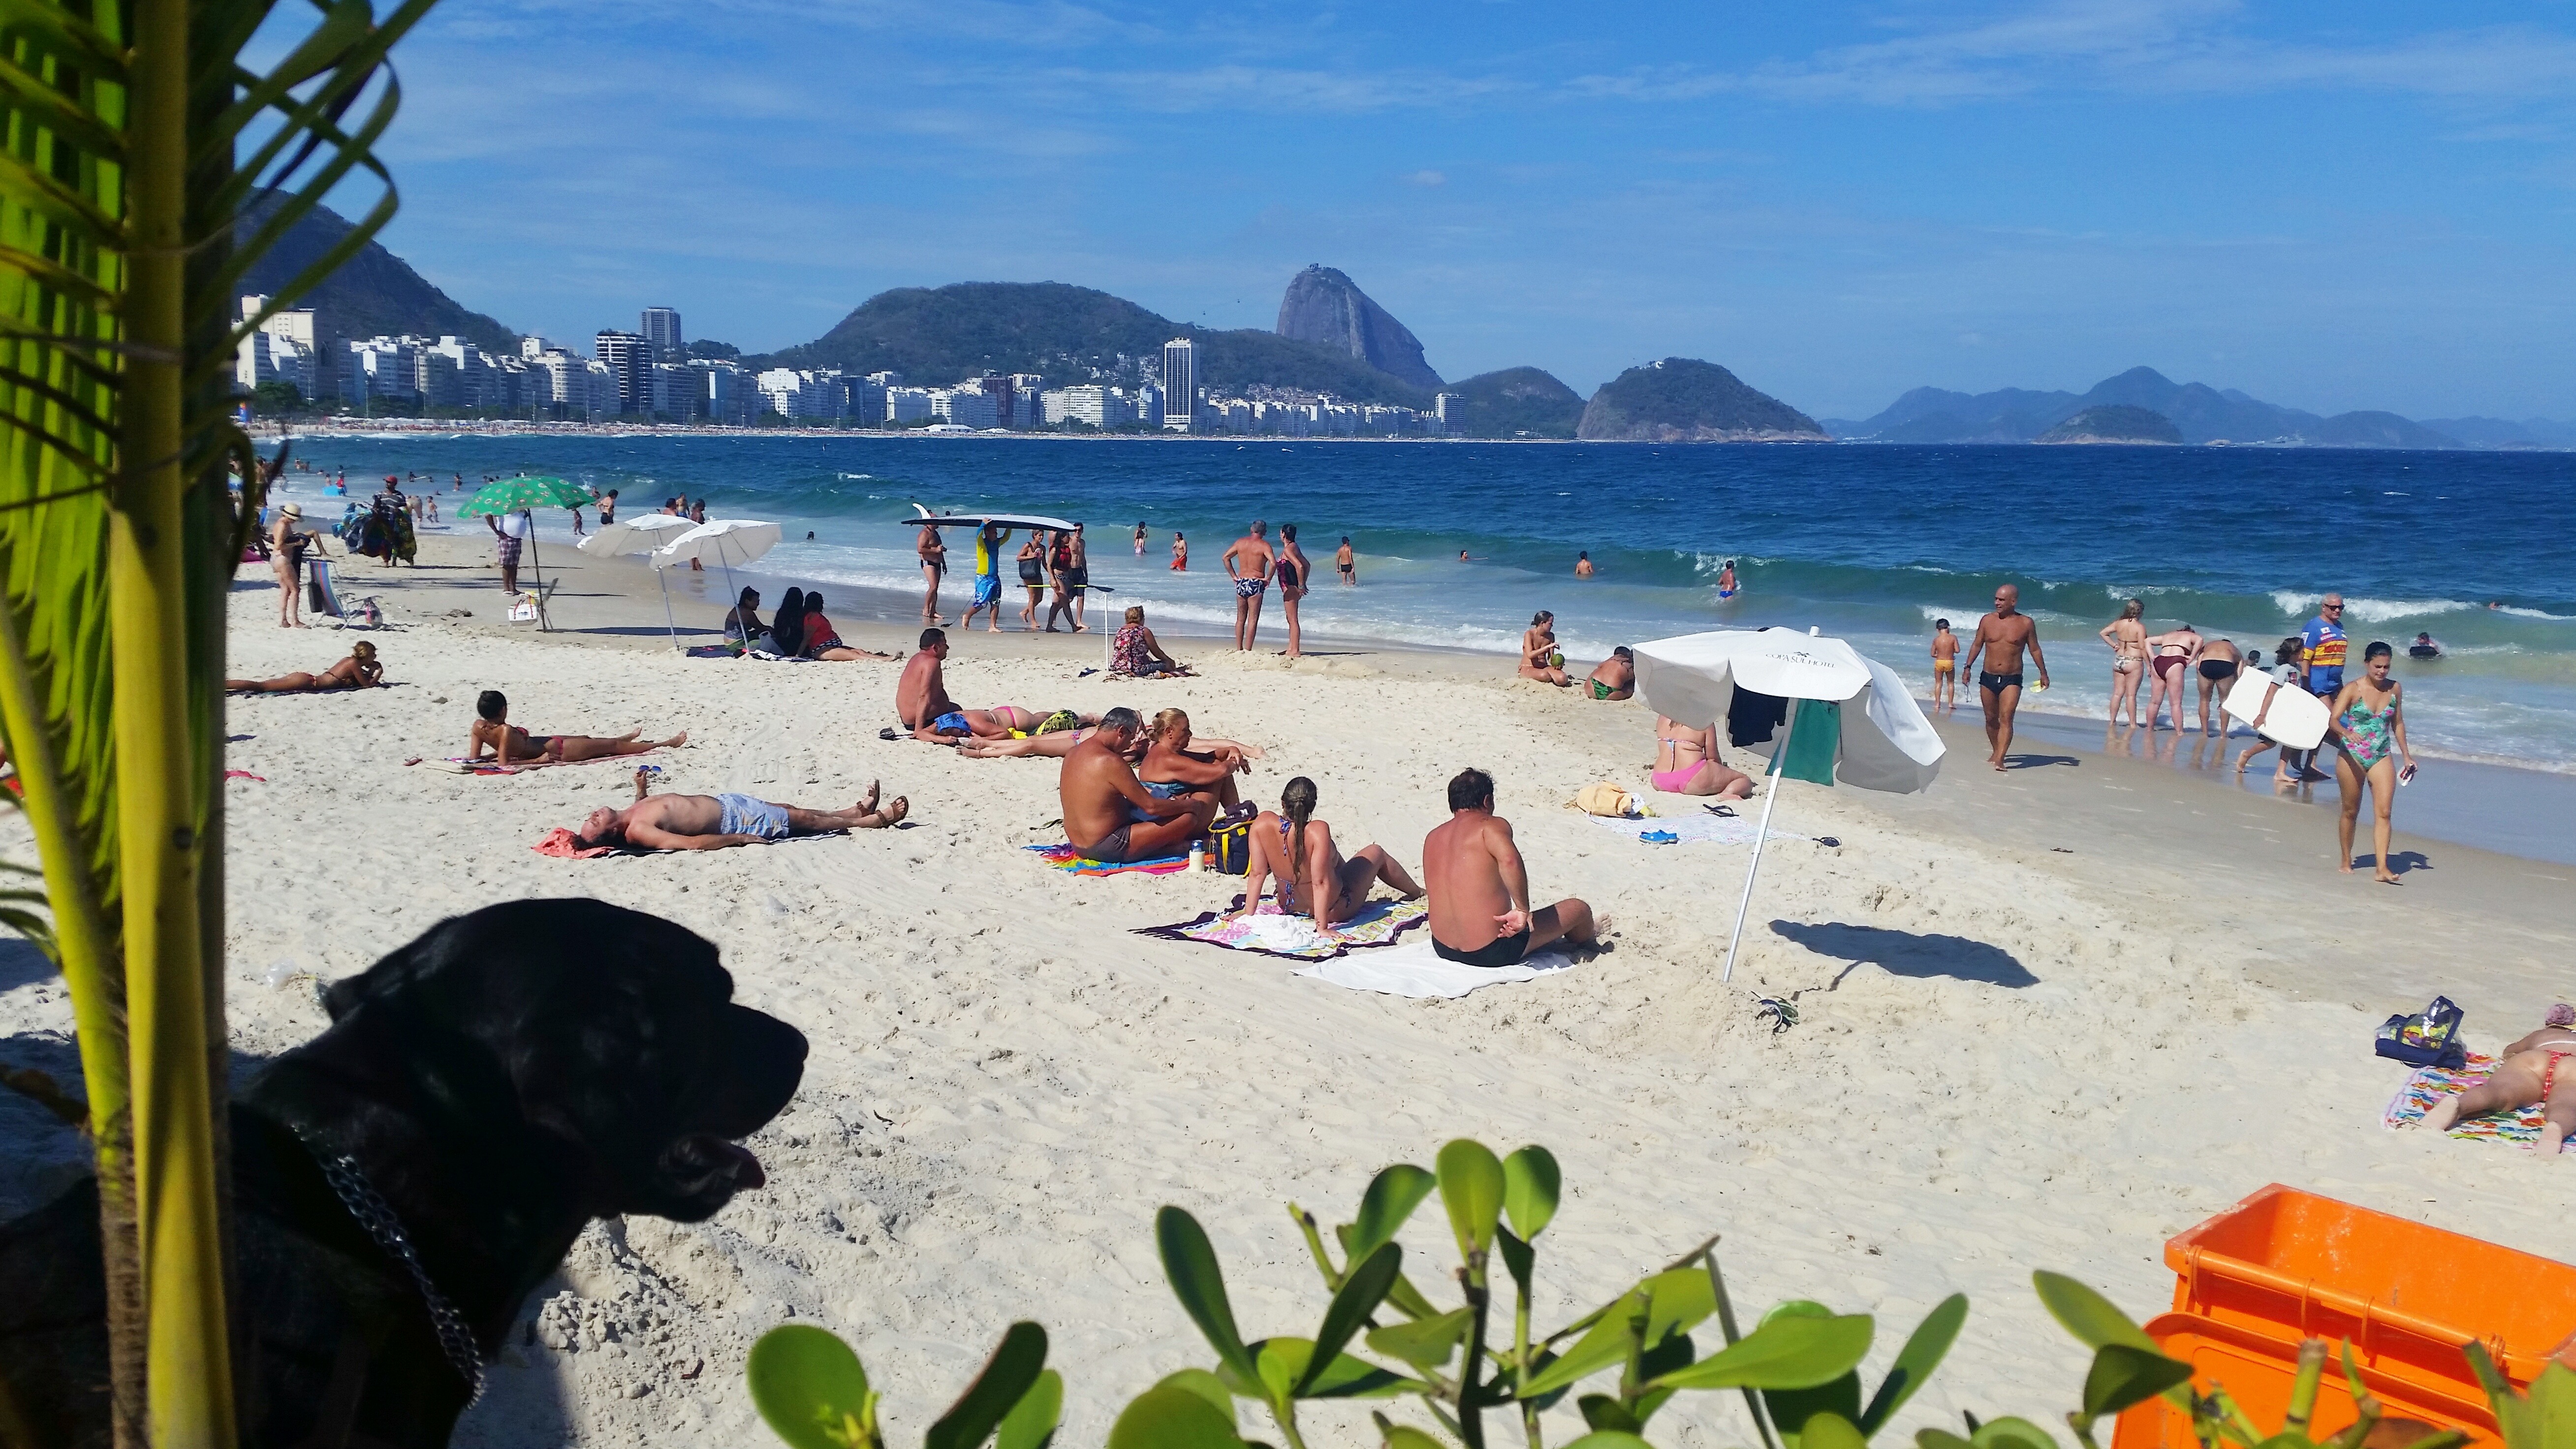 View of mountains in Rio de Janeiro from Copacabana Beach